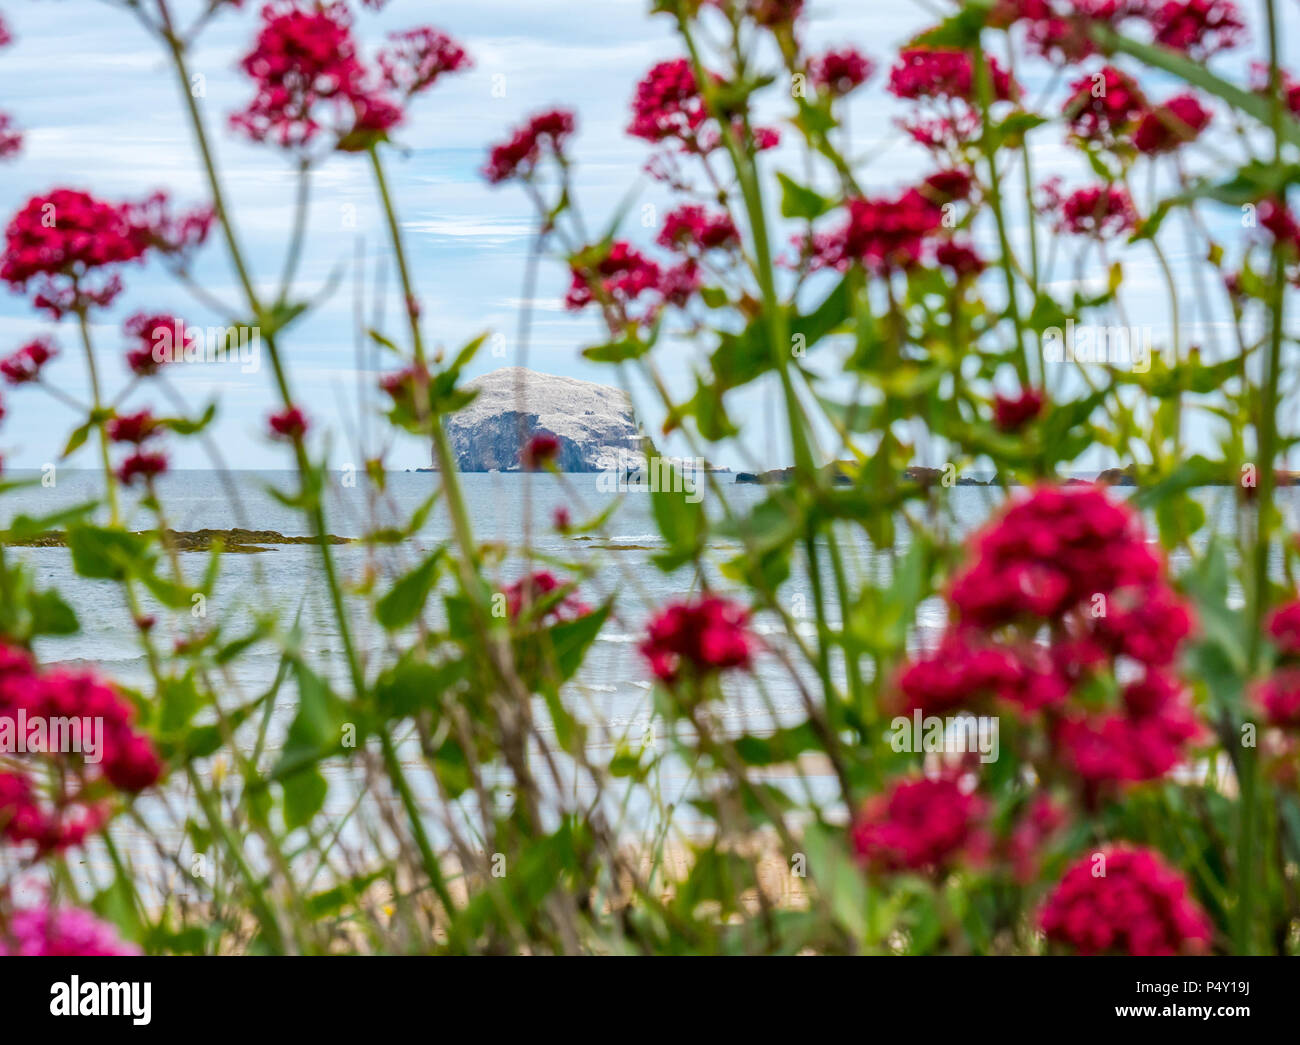 Bass Rock weiß mit Verschachtelung Tölpel, größte Northern gannet Kolonie, Morus bassanus, mit Centranthus ruber Wildblumen, North Berwick, Schottland, Großbritannien Stockfoto